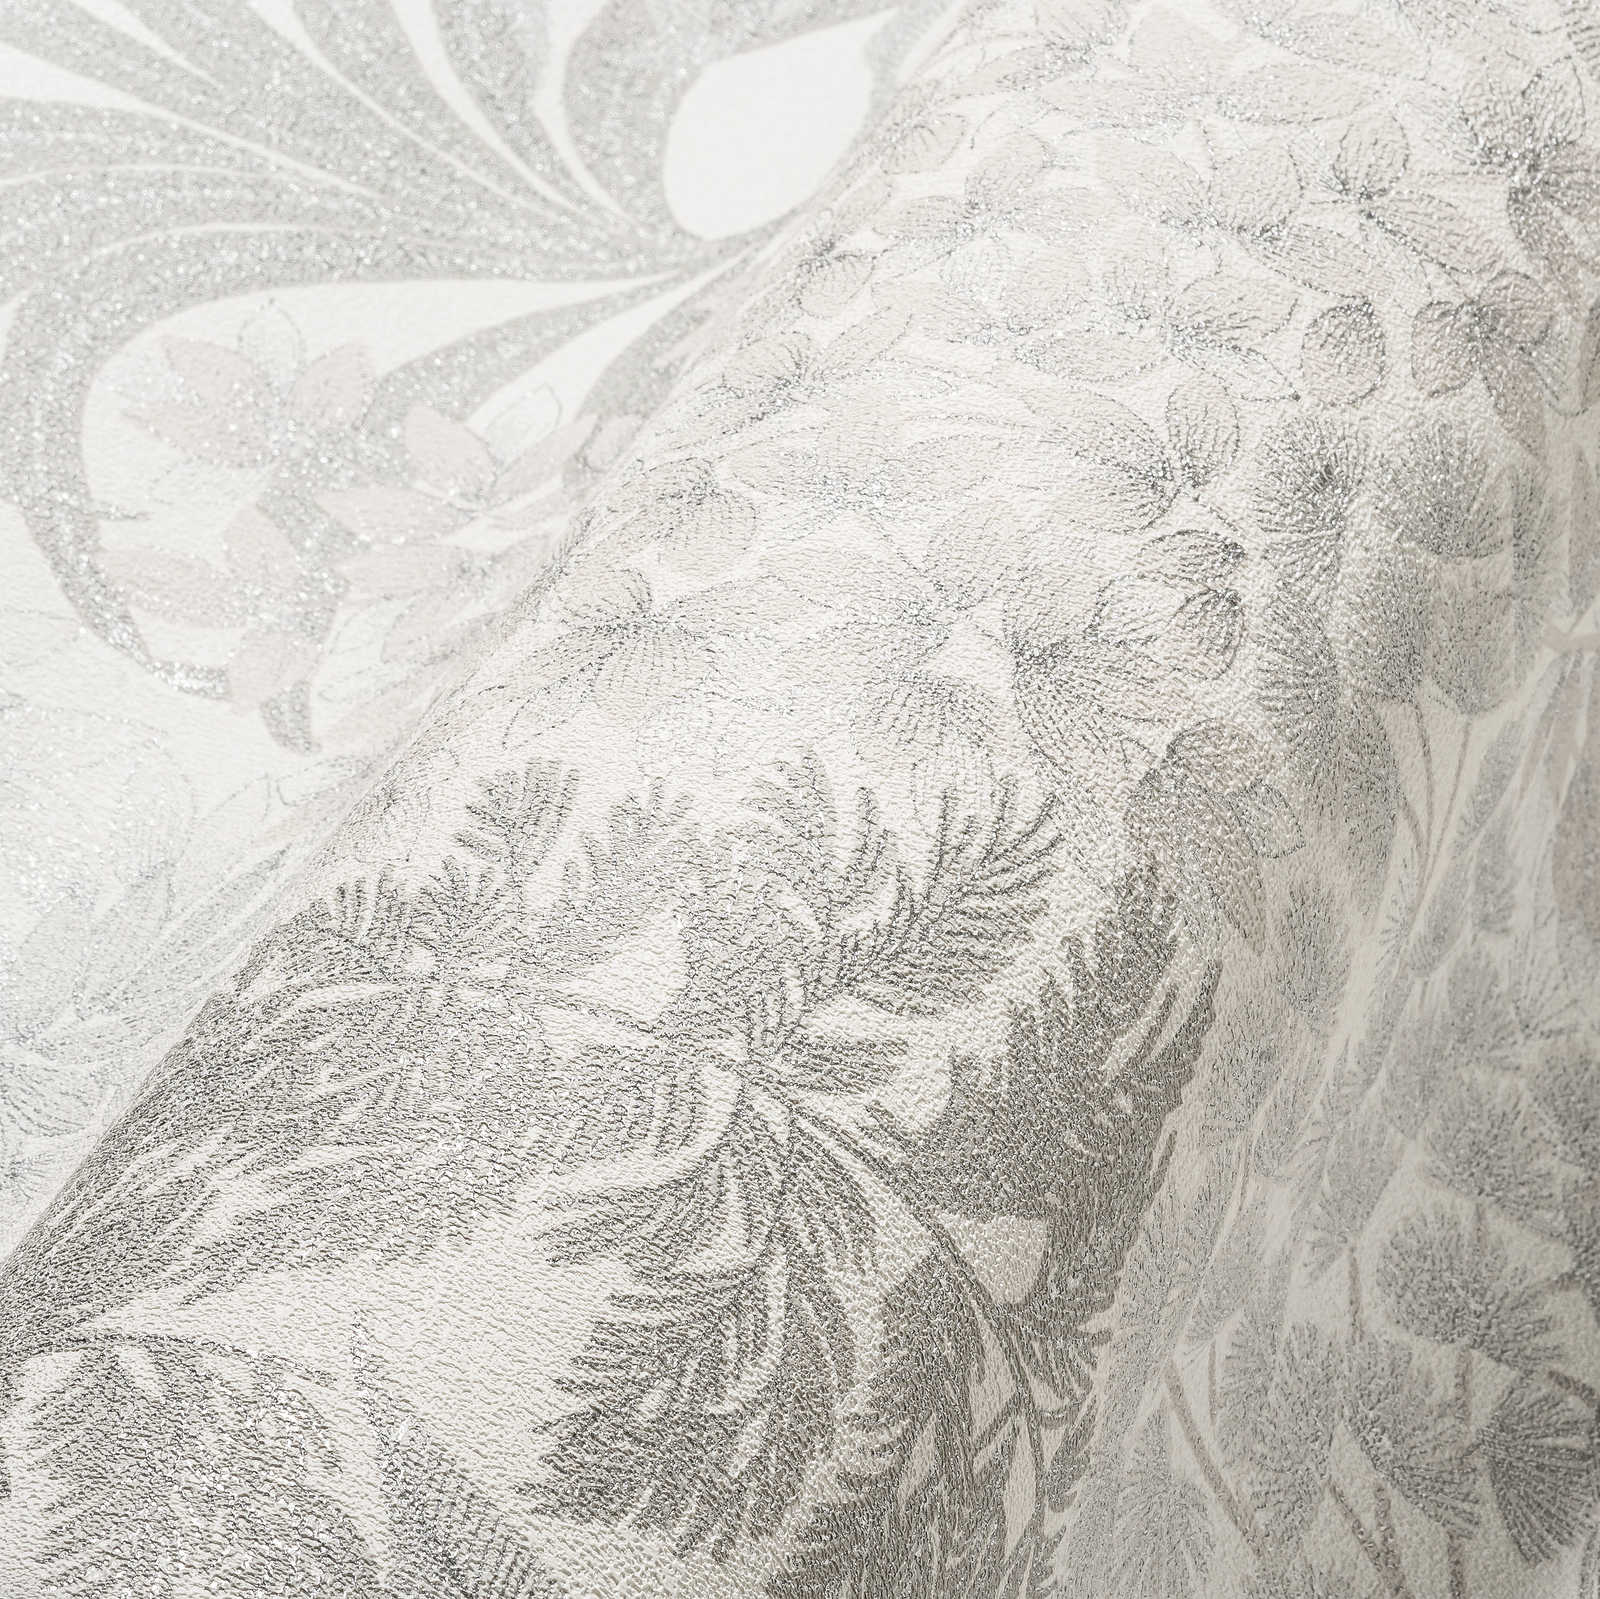             Licht glanzend bloemenbehang in een subtiele kleur - wit, grijs, zilver
        